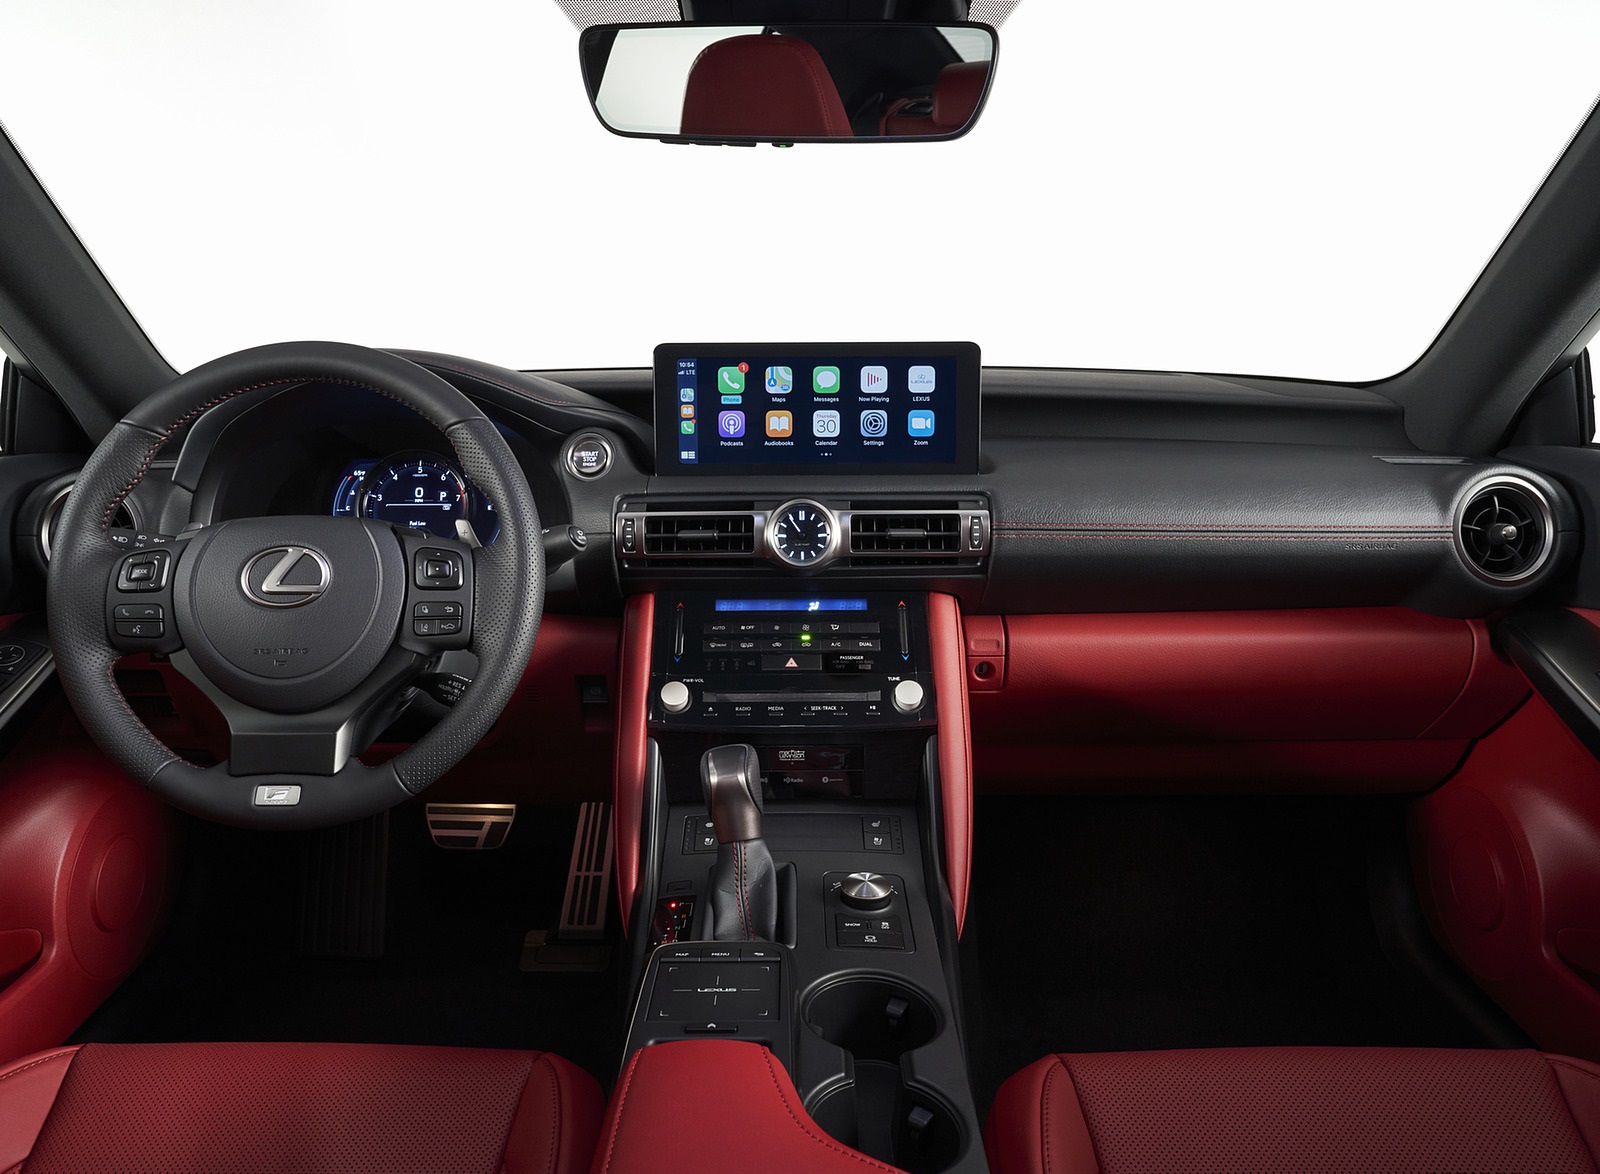 2021 Lexus IS Interior Cockpit Wallpapers #28 of 30